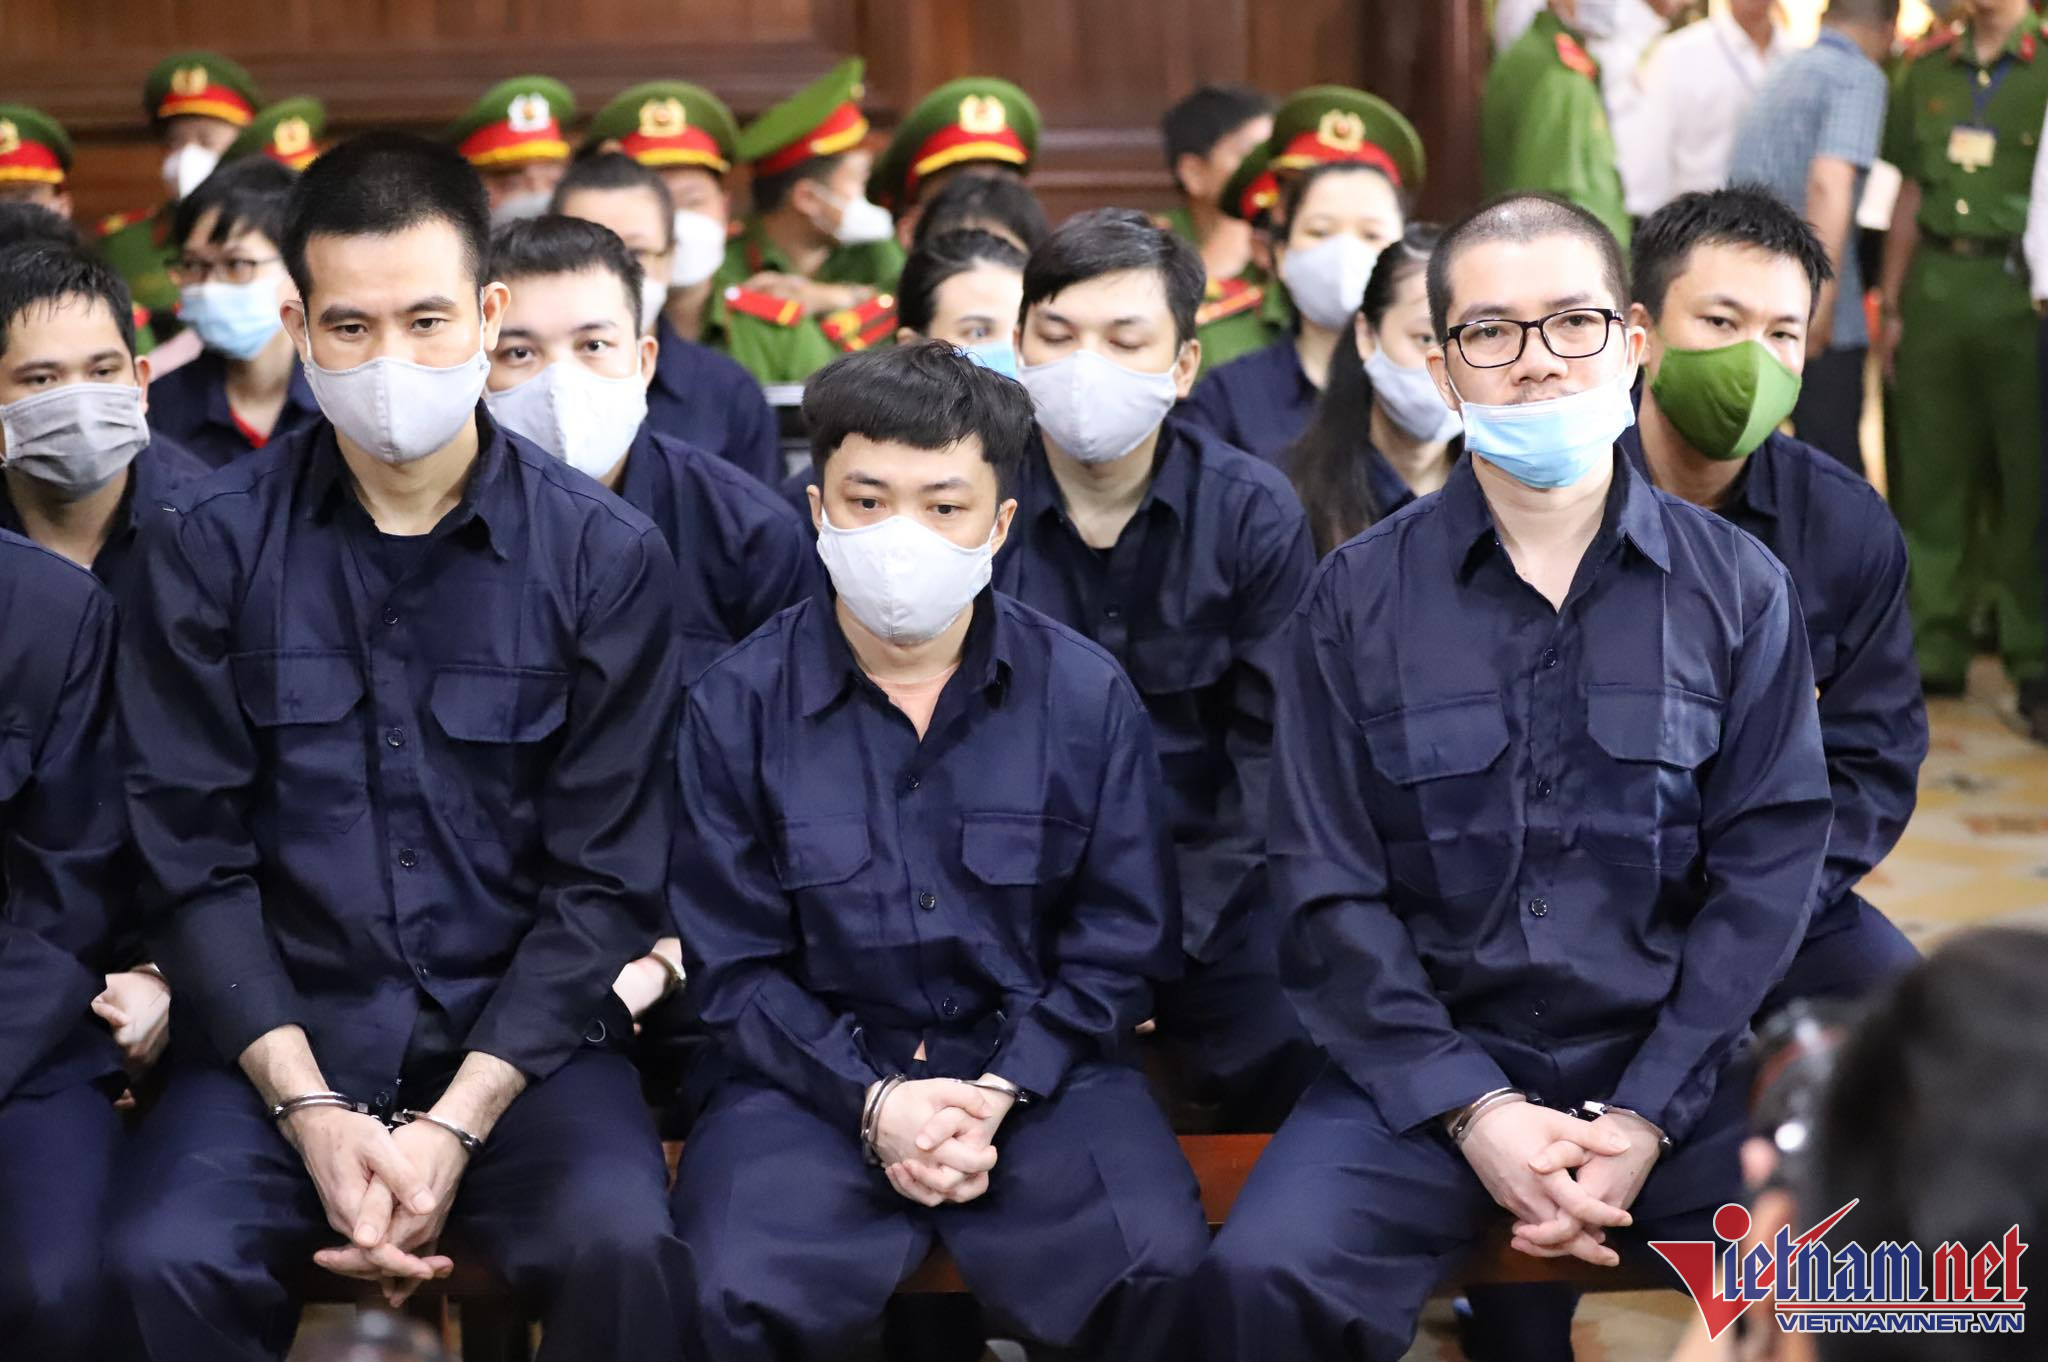 Hình ảnh phiên xét xử Chủ tịch Công ty địa ốc Alibaba, gần 4.000 bị hại